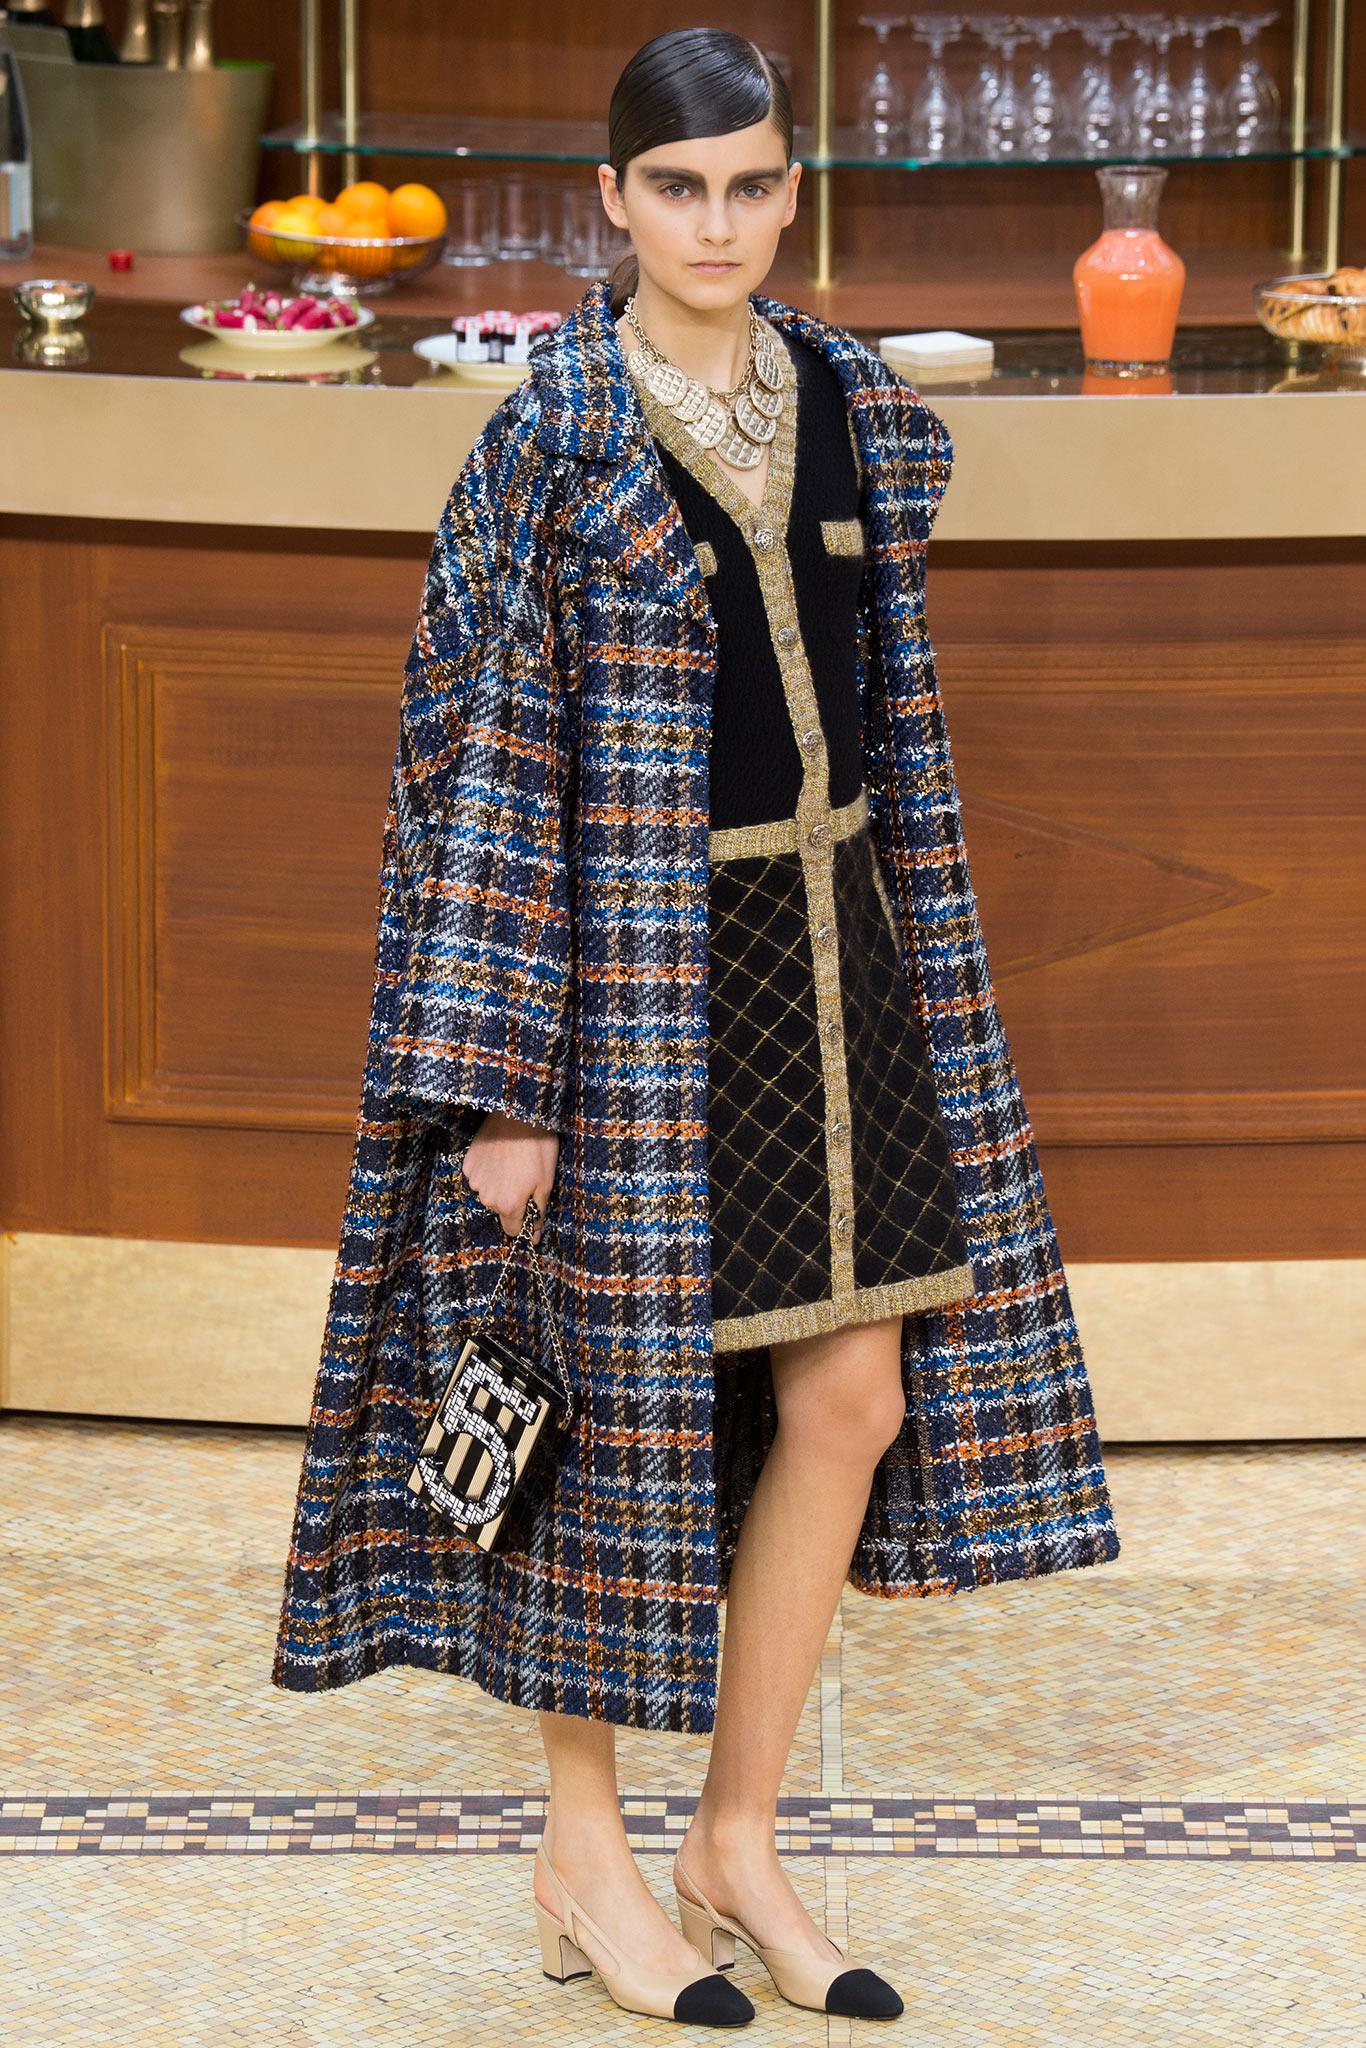 Super berühmte und seltene Chanel Jacke / Kleid aus ''Coco Brasserie'' 2015 Herbst Kollektion, Verkaufspreis 8.870$. Gesehen in der Chanel Werbekampagne, in vielen Magazinen. Ikonisch und wiedererkennbar. 
Größenbezeichnung 40 fr. 
✨ Kamelienförmige